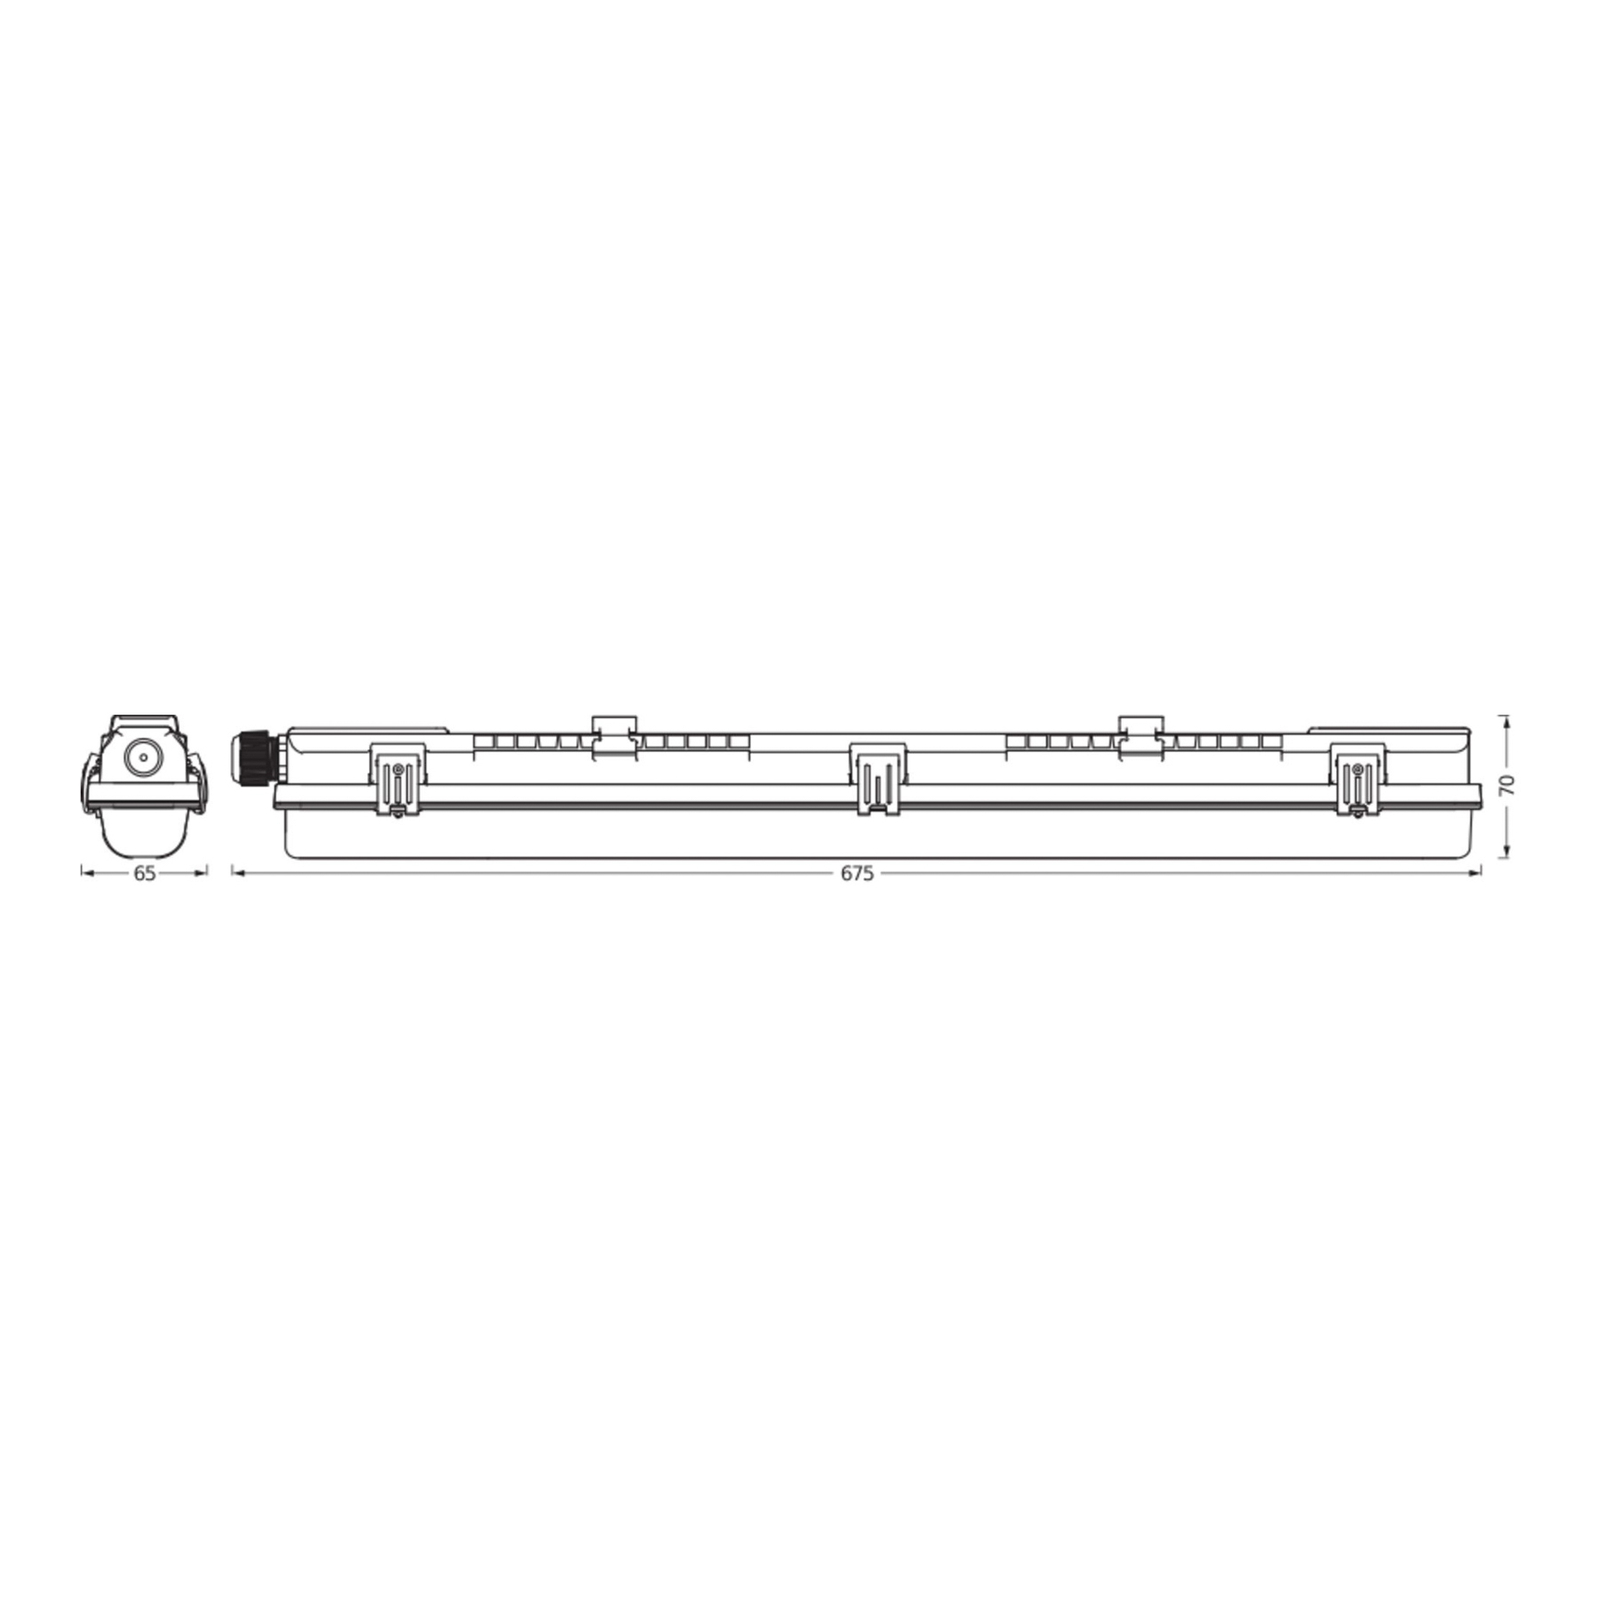 Svítidlo LEDVANCE Submarine PCR 60 G13 T8 840 7 W odolné proti vlhkosti